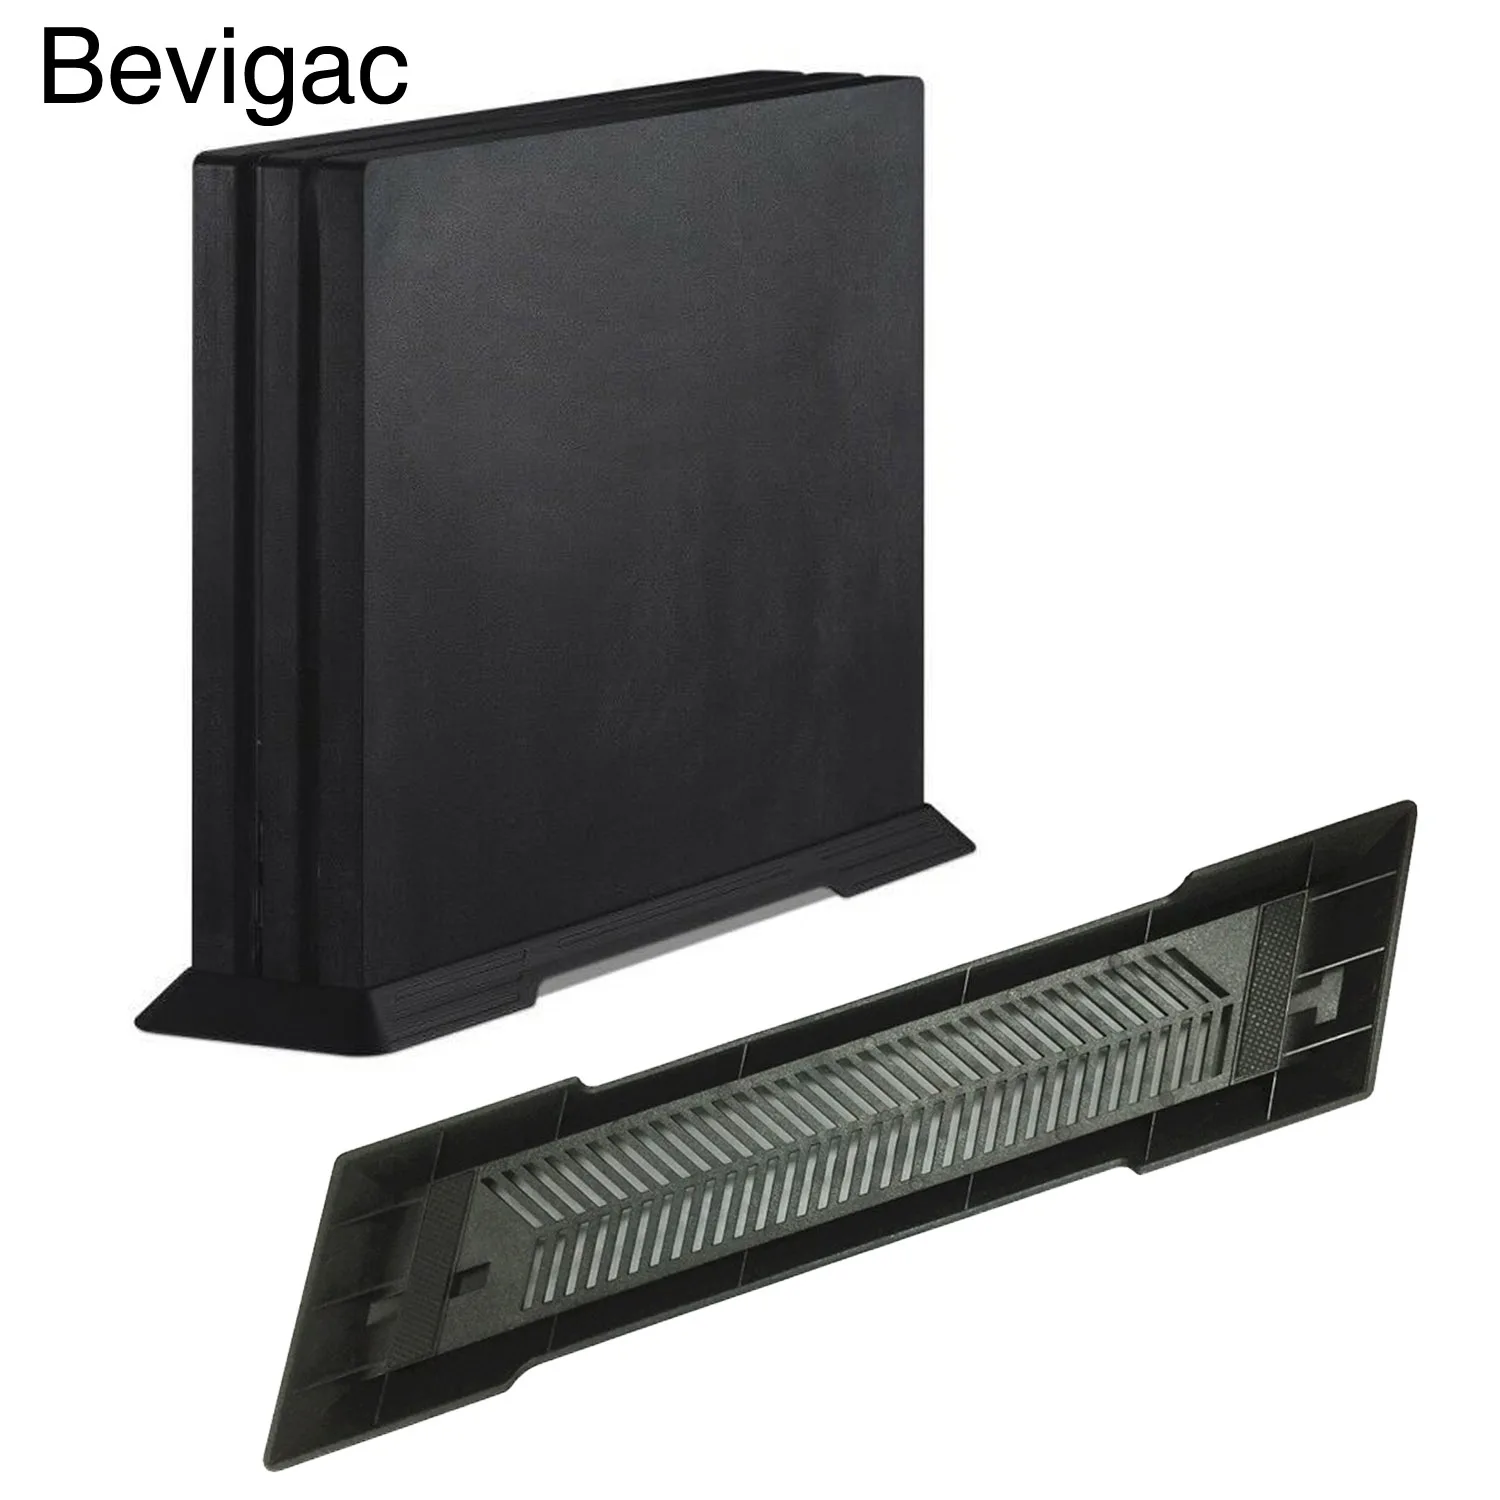 Bevigac простой вертикальная подставка вентилятор охлаждения док-станция с вентилятором станция встроенный вентиляционные отверстия для sony Игровые приставки 4 PS4 тонкий